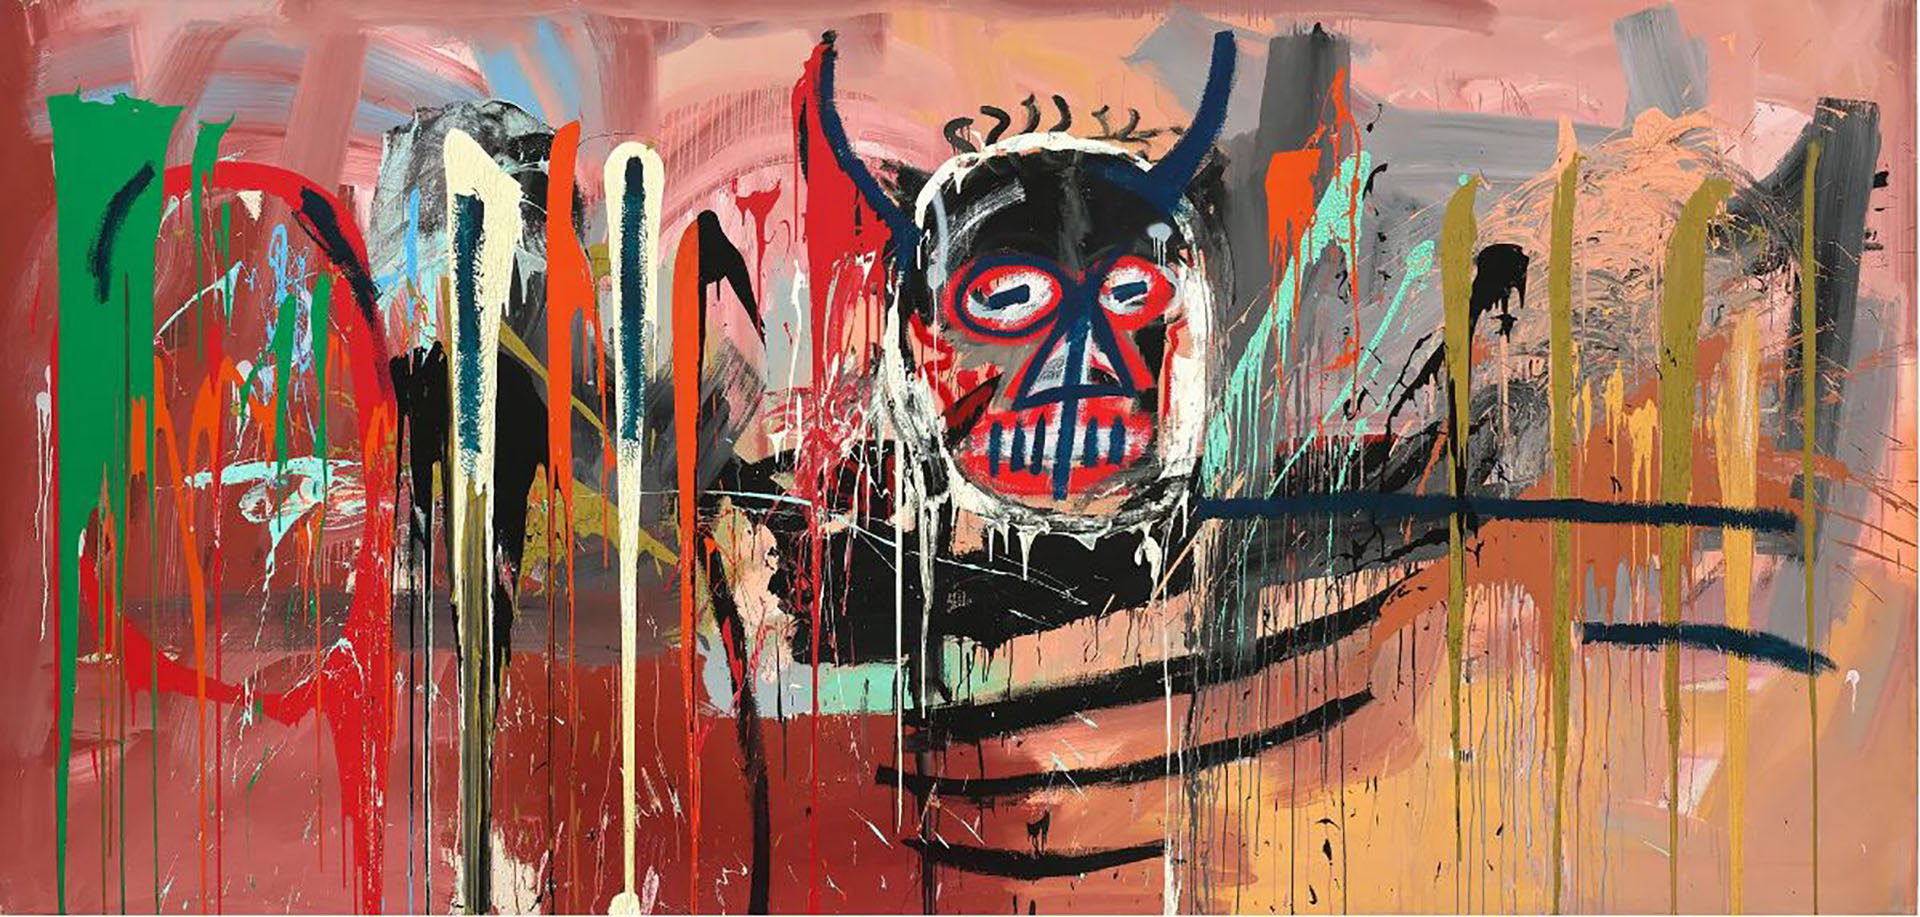 La obra "Untitled" de Jean-Michel Basquiat de 1982